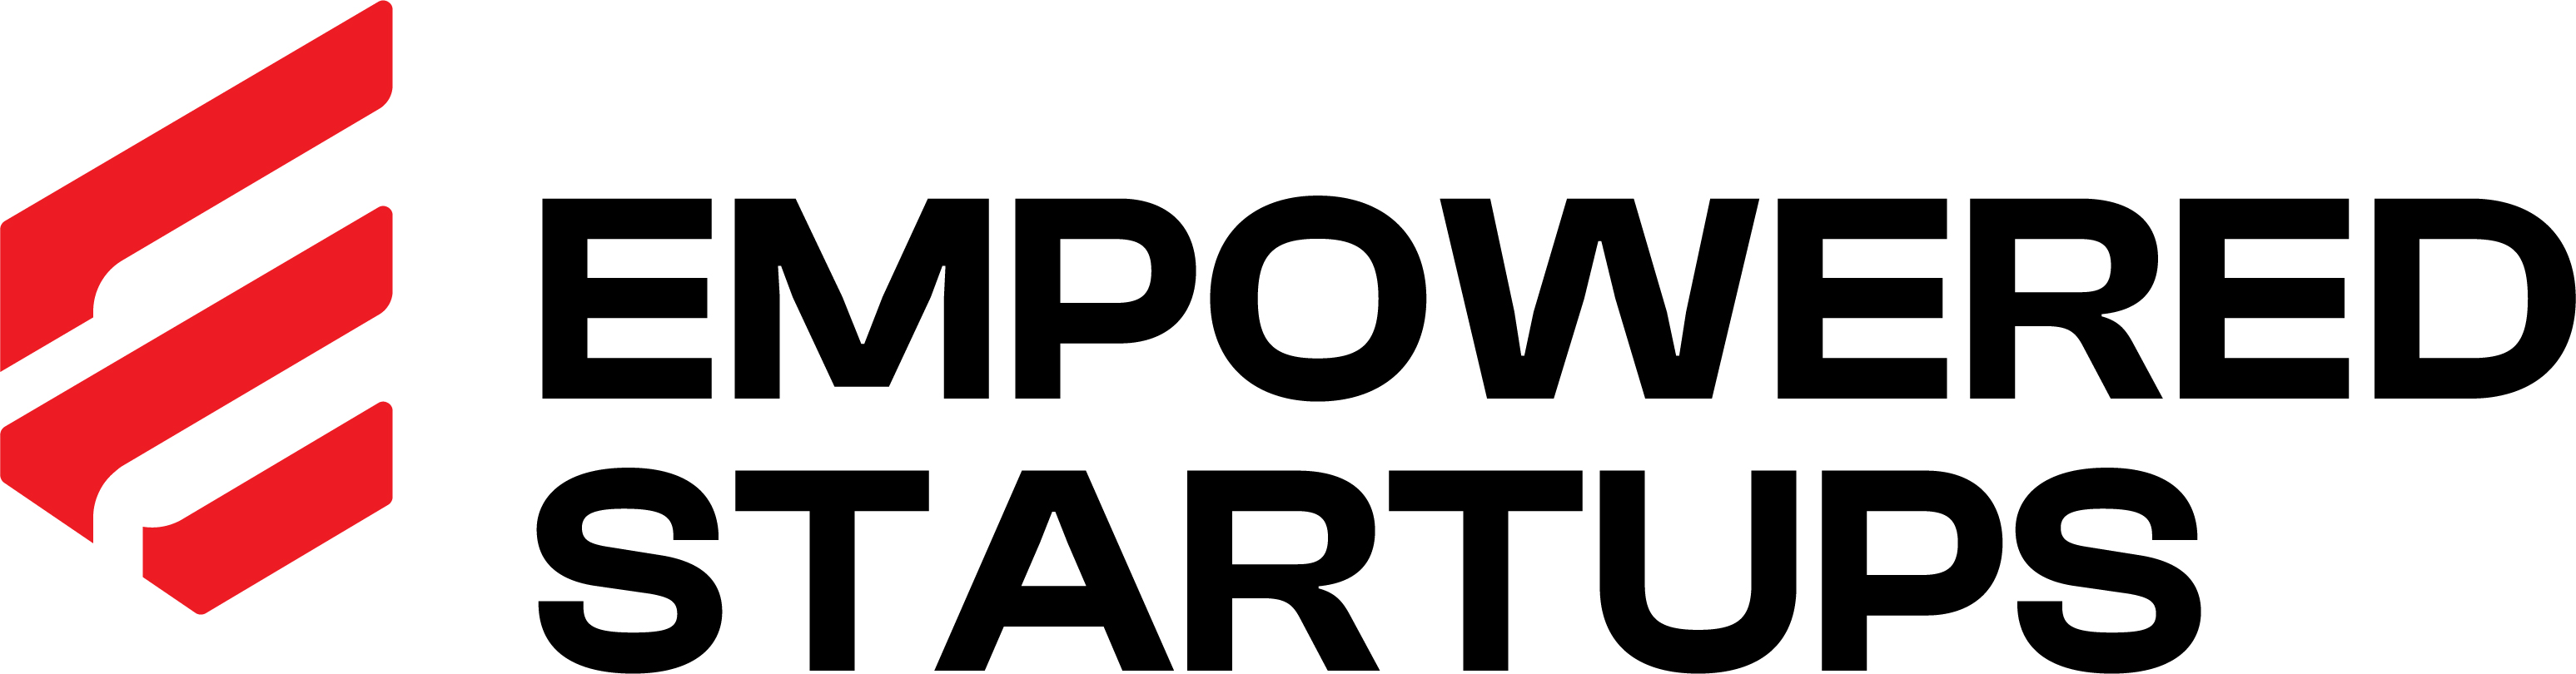 Empowered Startups logo